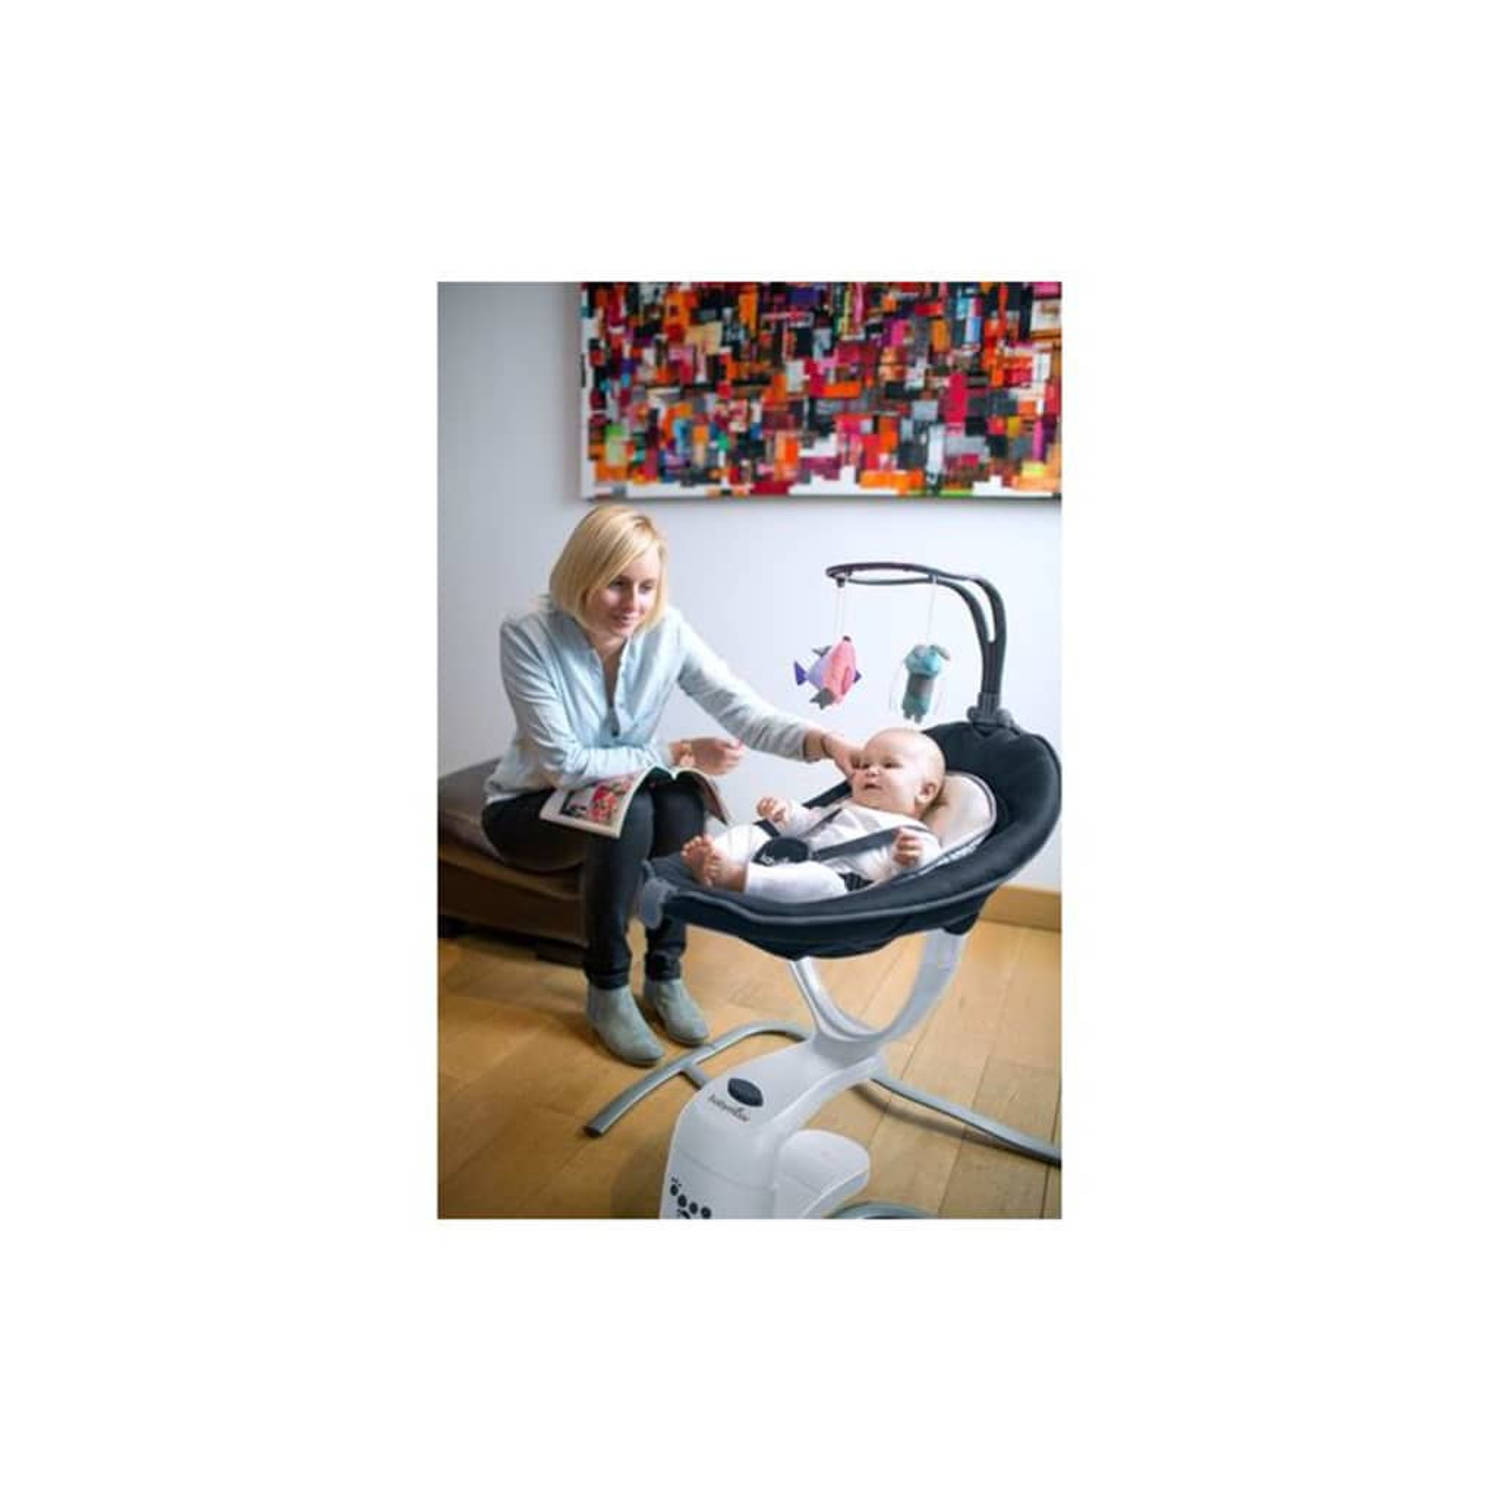 Werkgever Pasen schoolbord Babymoov Baby schommelstoel automatisch Swoon Motion | Blokker